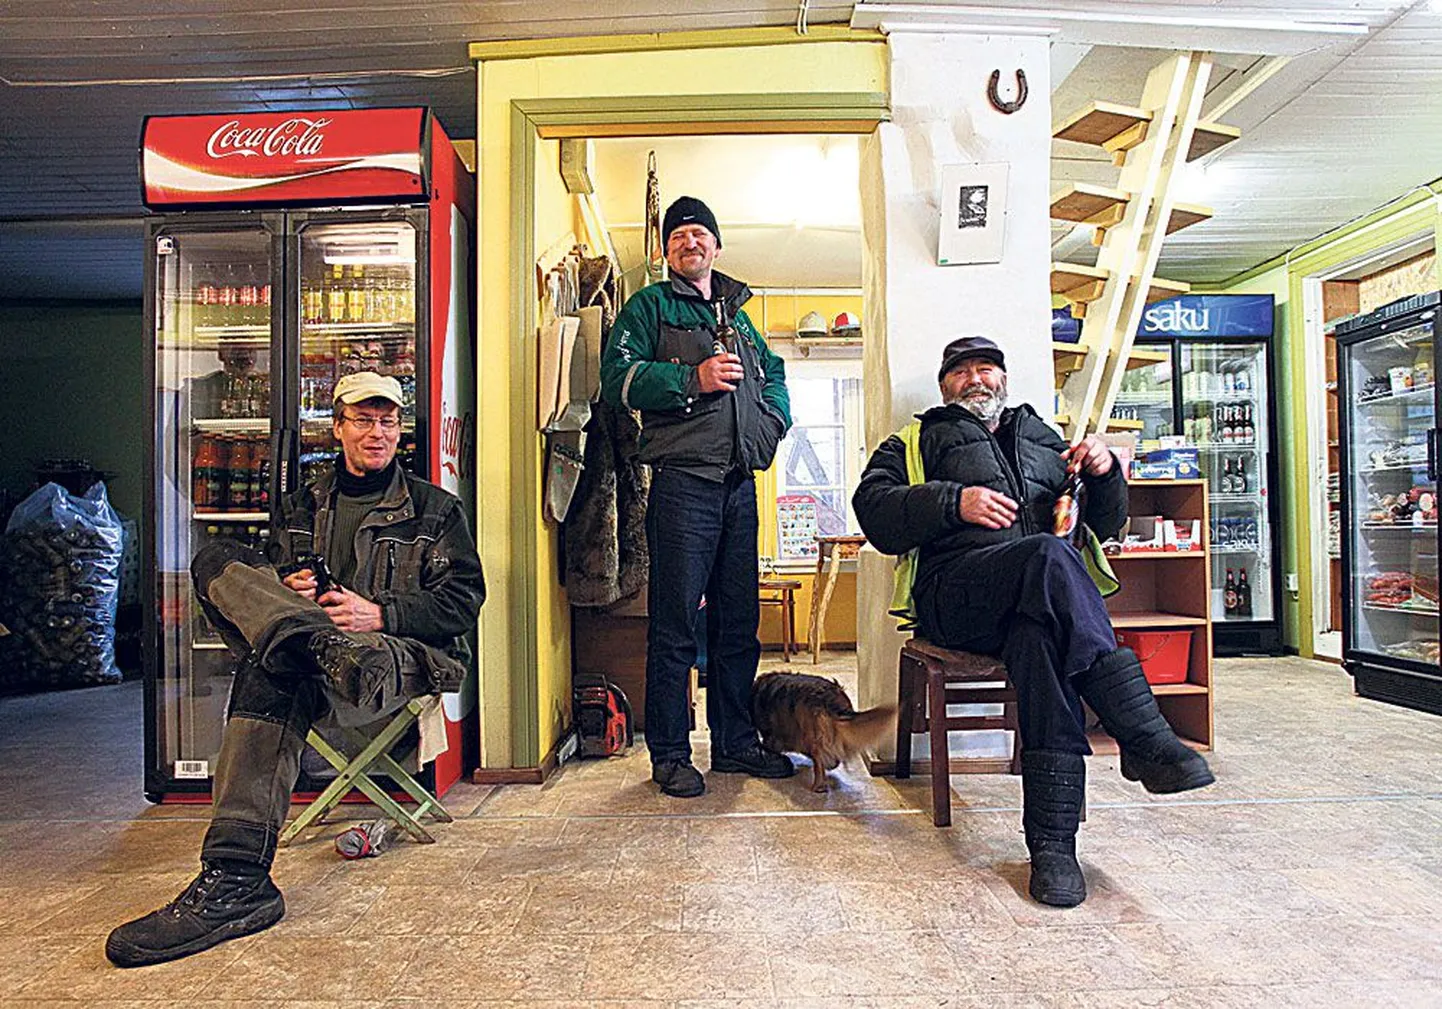 В магазине Луйзе Йыэрс мужчины обсуждали планы на день: (слева направо) Хейки Кукк, островной электрик Удо Мяги и пенсионер Дмитрий Рийзенберг.